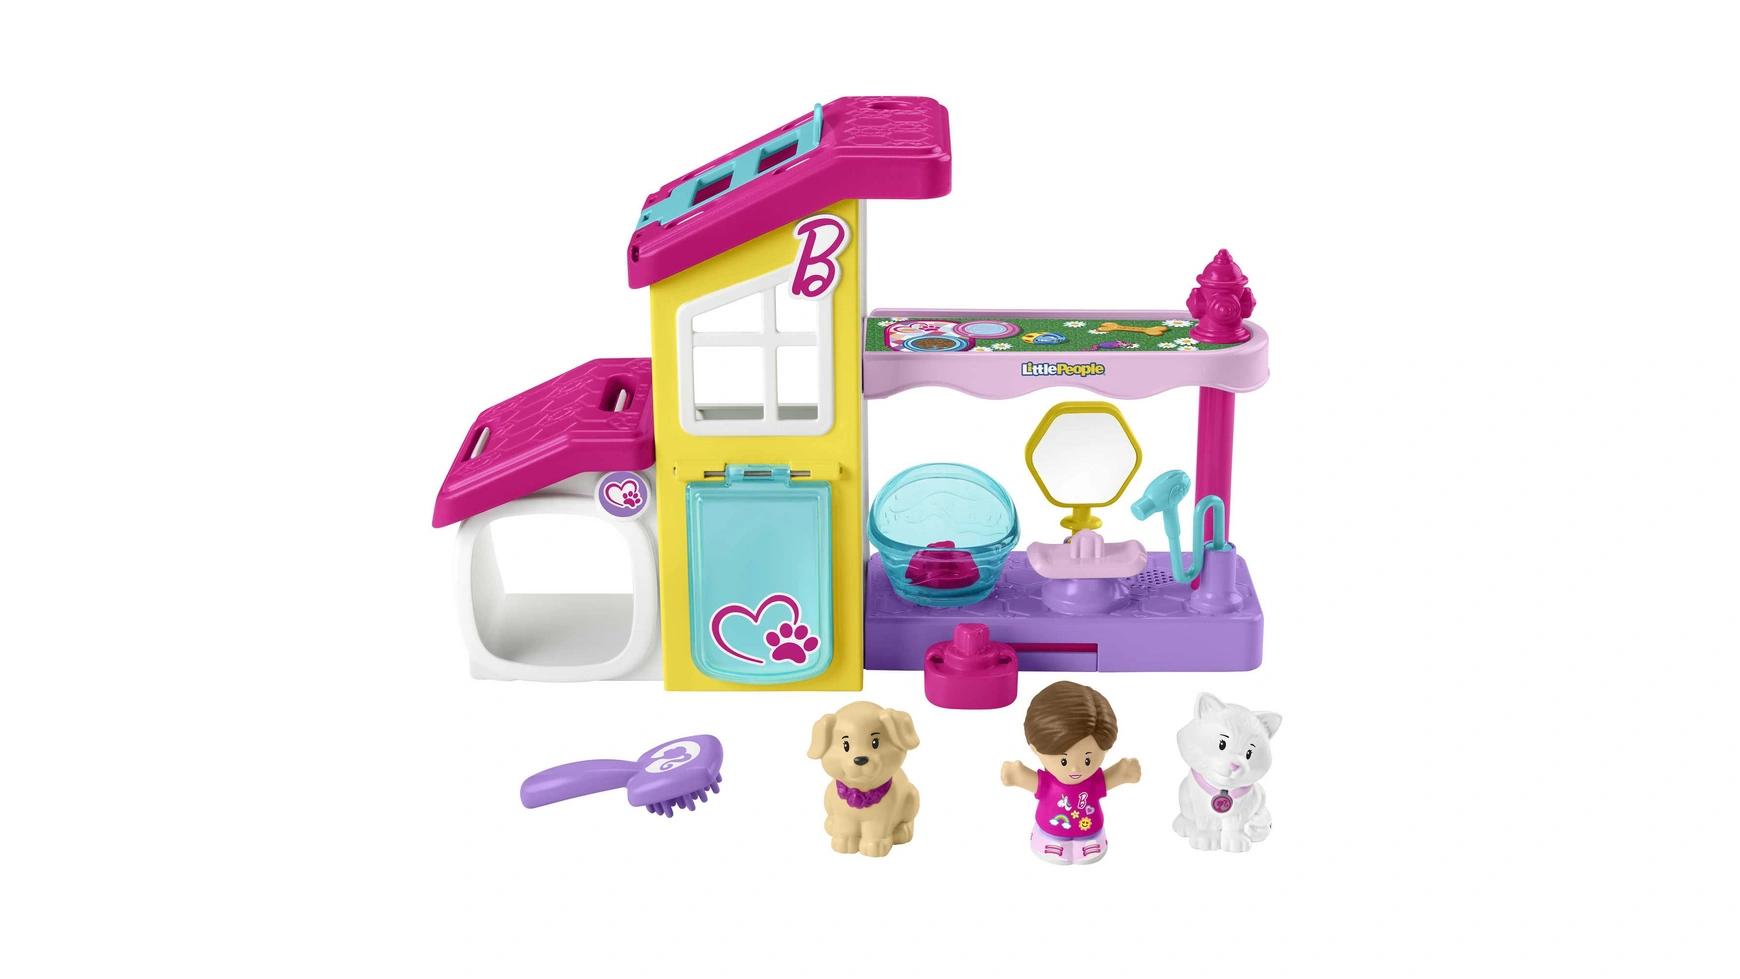 Игровой набор Fisher Price Little People Barbie Animal Station с 3 фигурками набор игровой hape ветеринарная клиника двухэтажный с животными куклой и аксессуарами